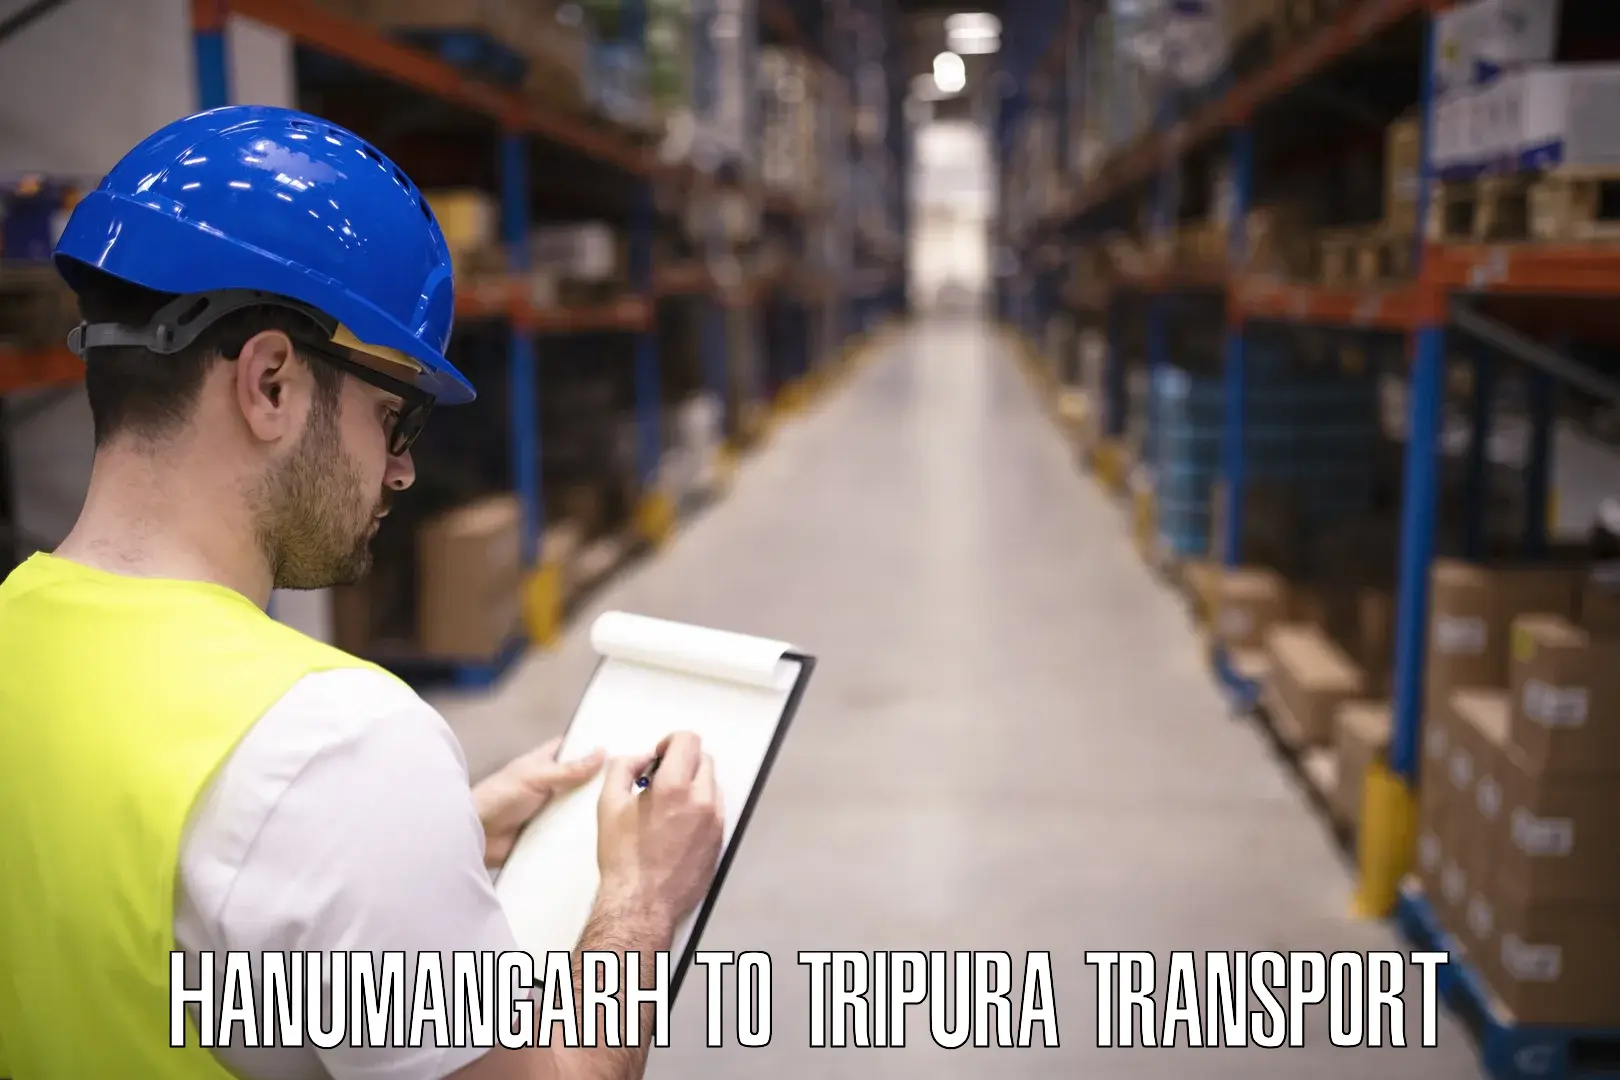 Furniture transport service Hanumangarh to Dhalai